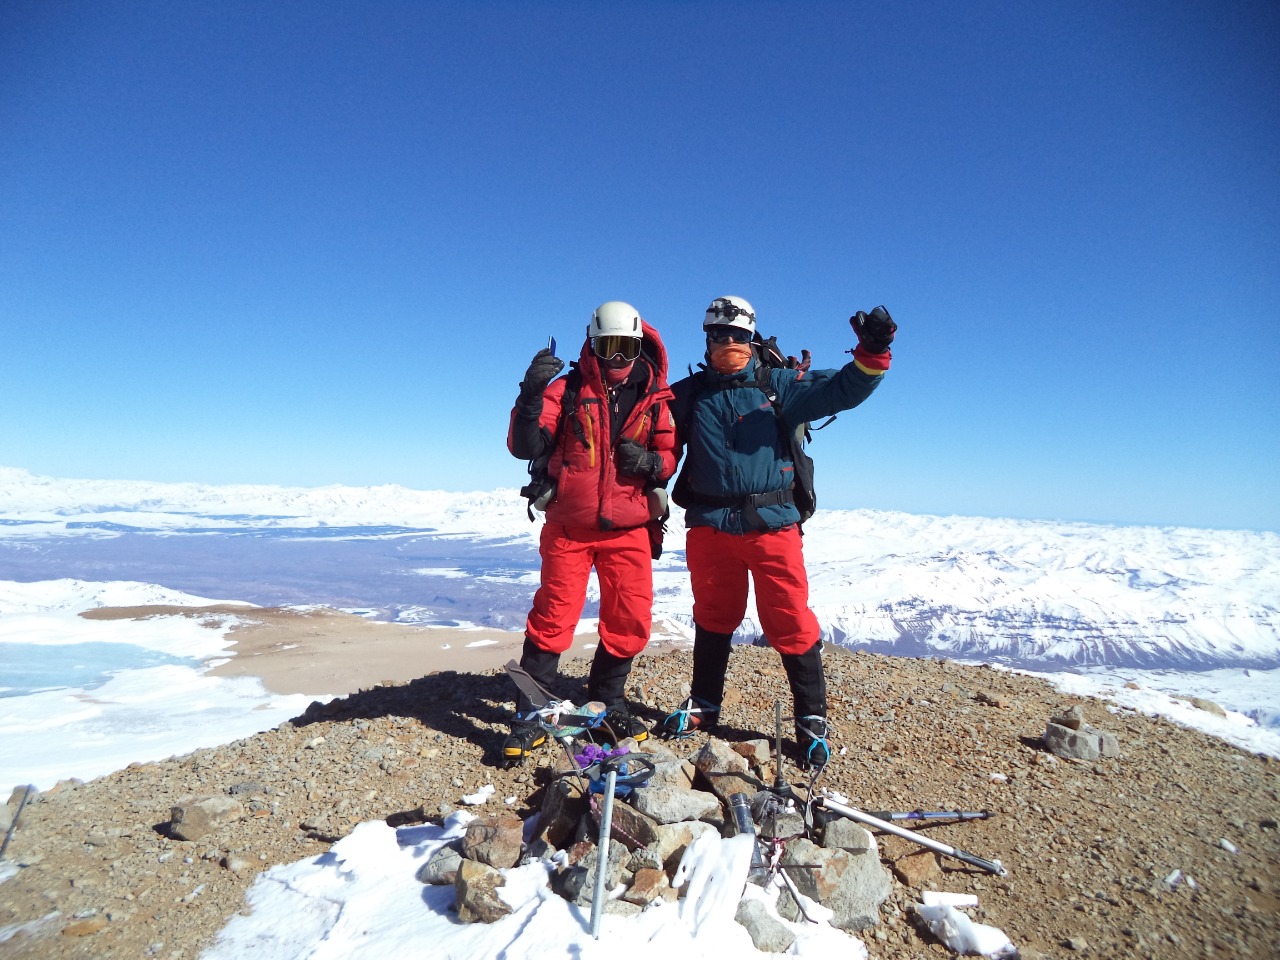 Momento cumbre. Daniel Castillo y Héctor Valdez saludan a la cámara de Damián Hernández en la cima del volcán Domuyo, el punto más alto de la Patagonia., 